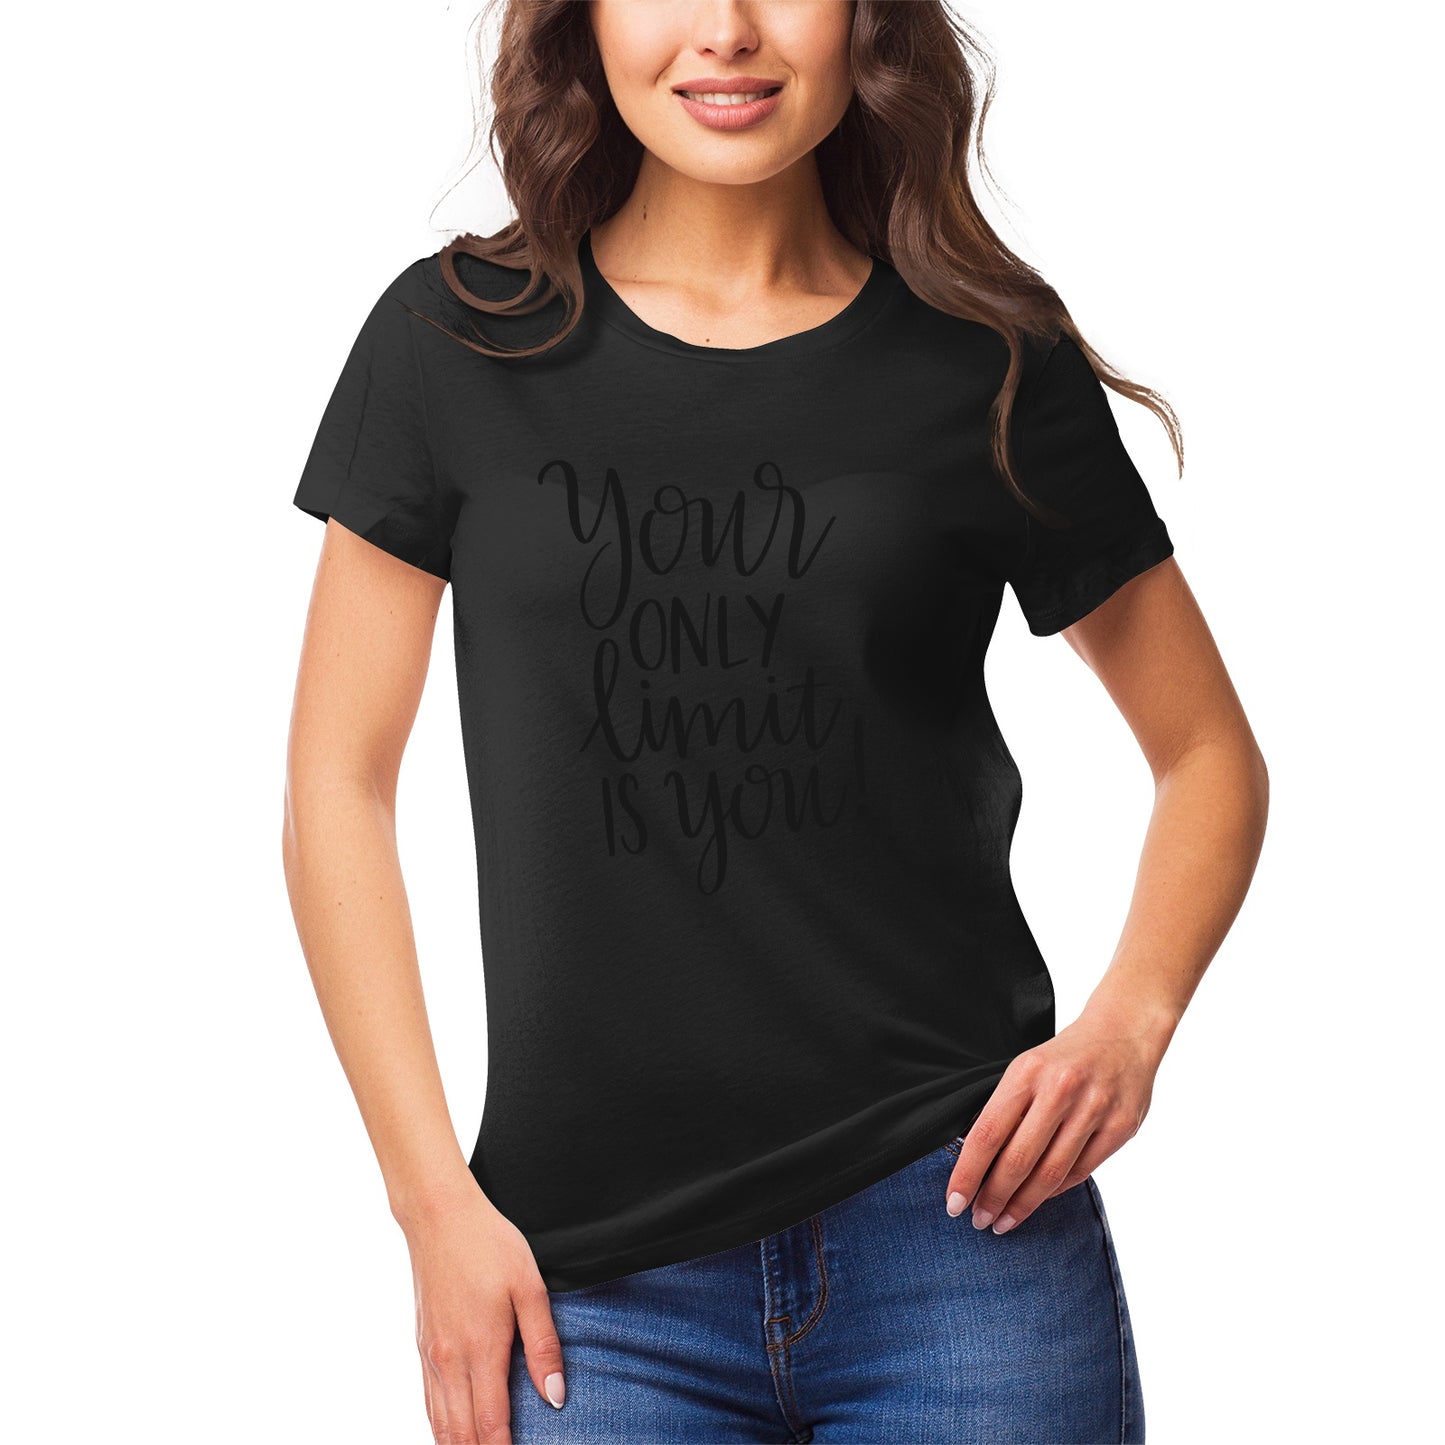 Fantasy 22 Women's Ultrasoft Pima Cotton T‑shirt - DromedarShop.com Online Boutique